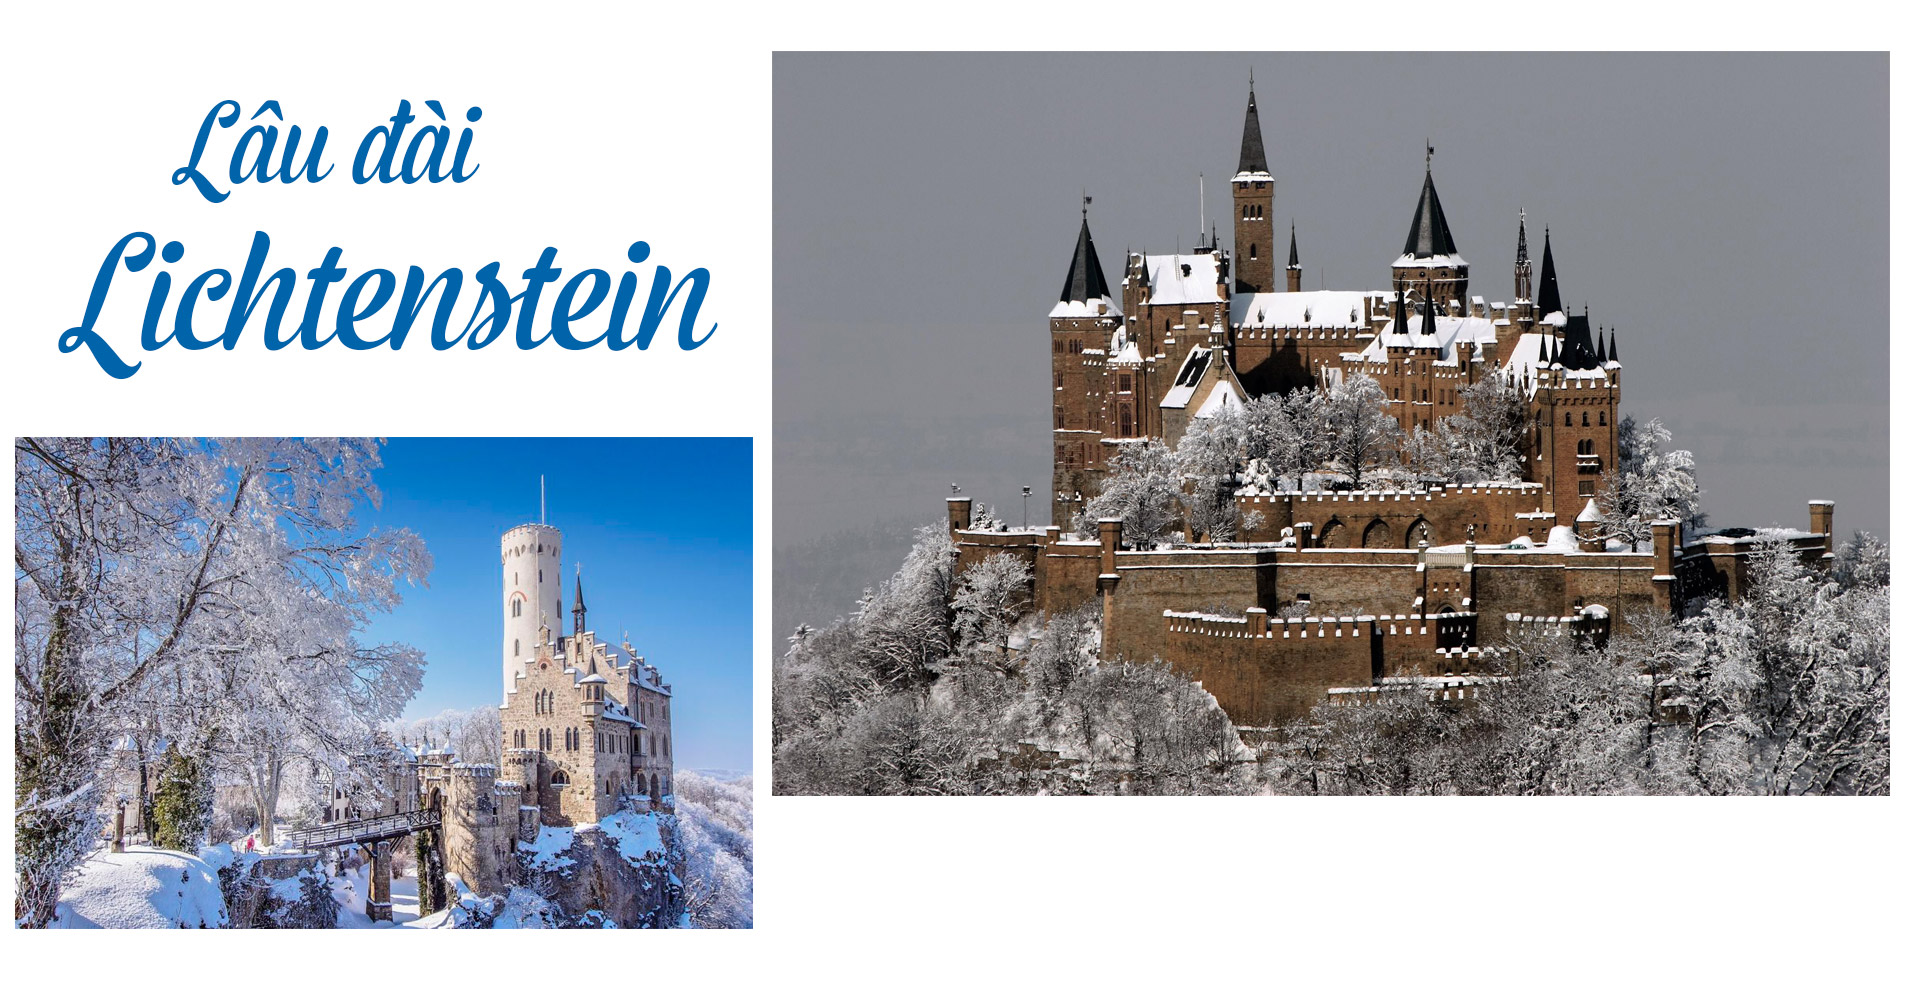 17 lâu đài cổ tích châu Âu đáng đến thăm vào mùa đông - 12